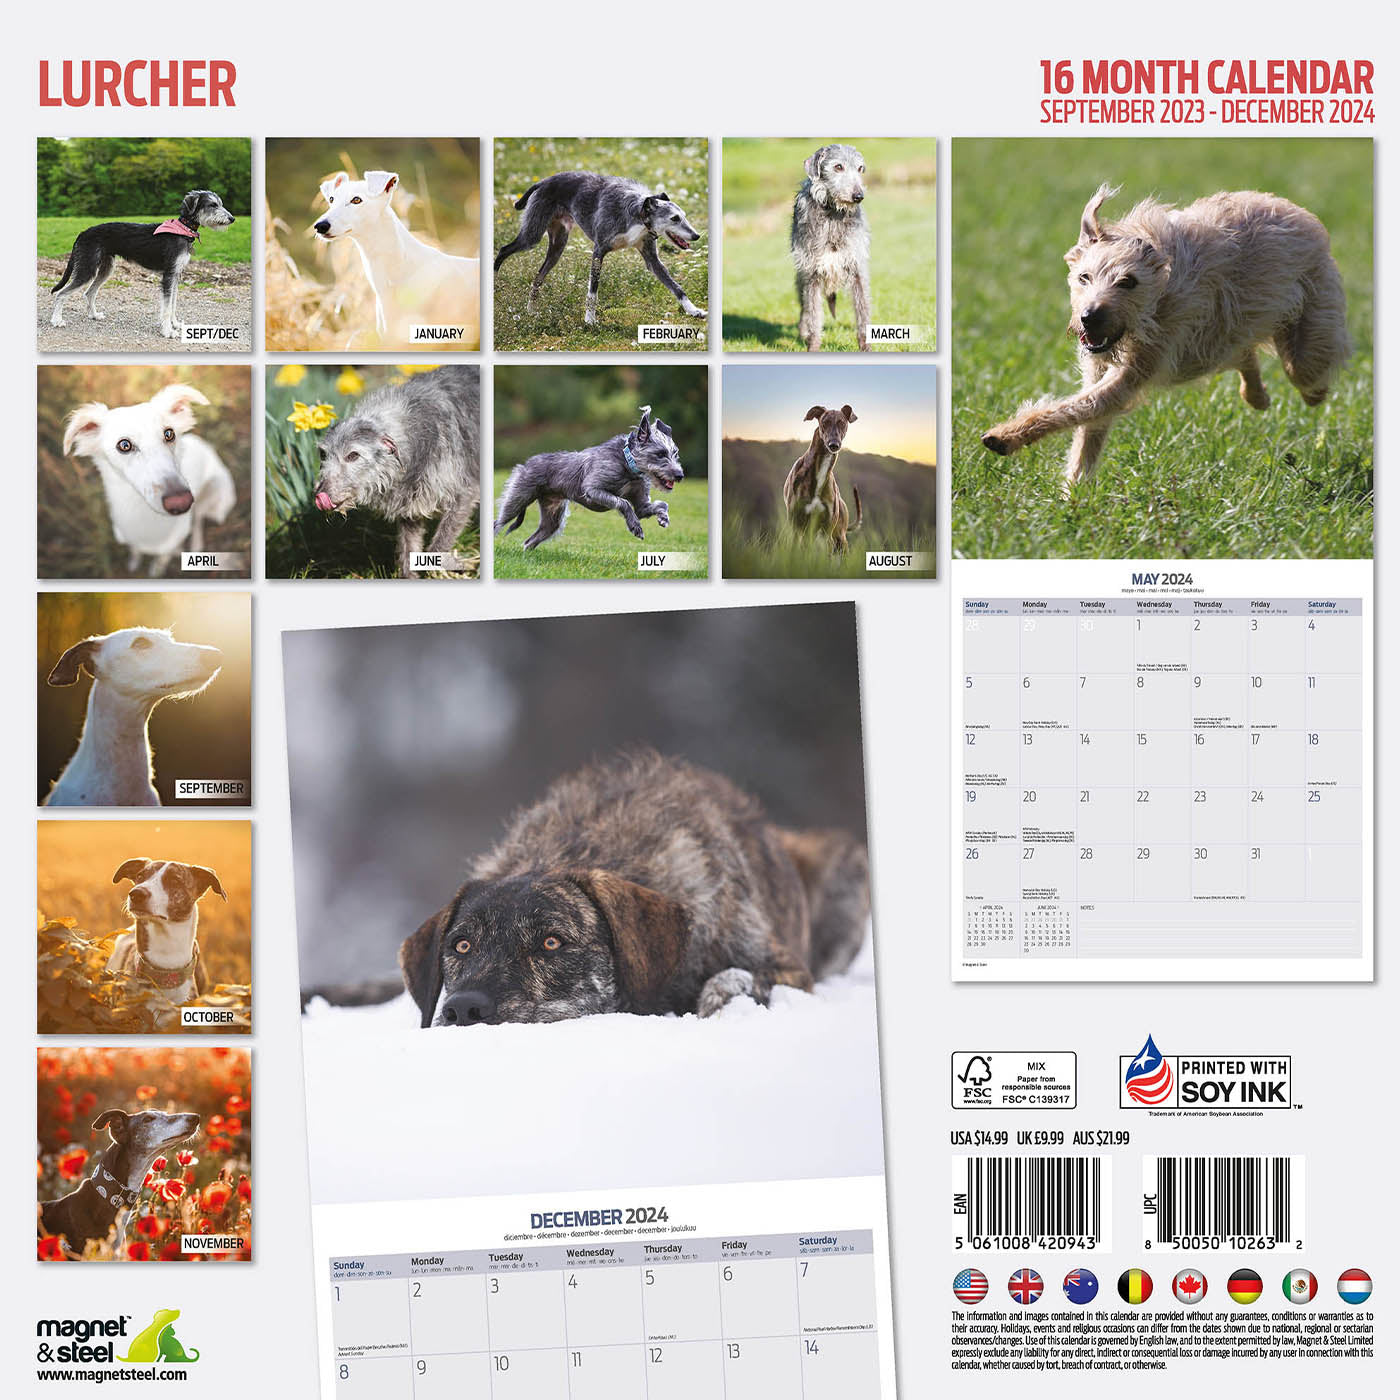 Lurcher Traditional Calendar 2024